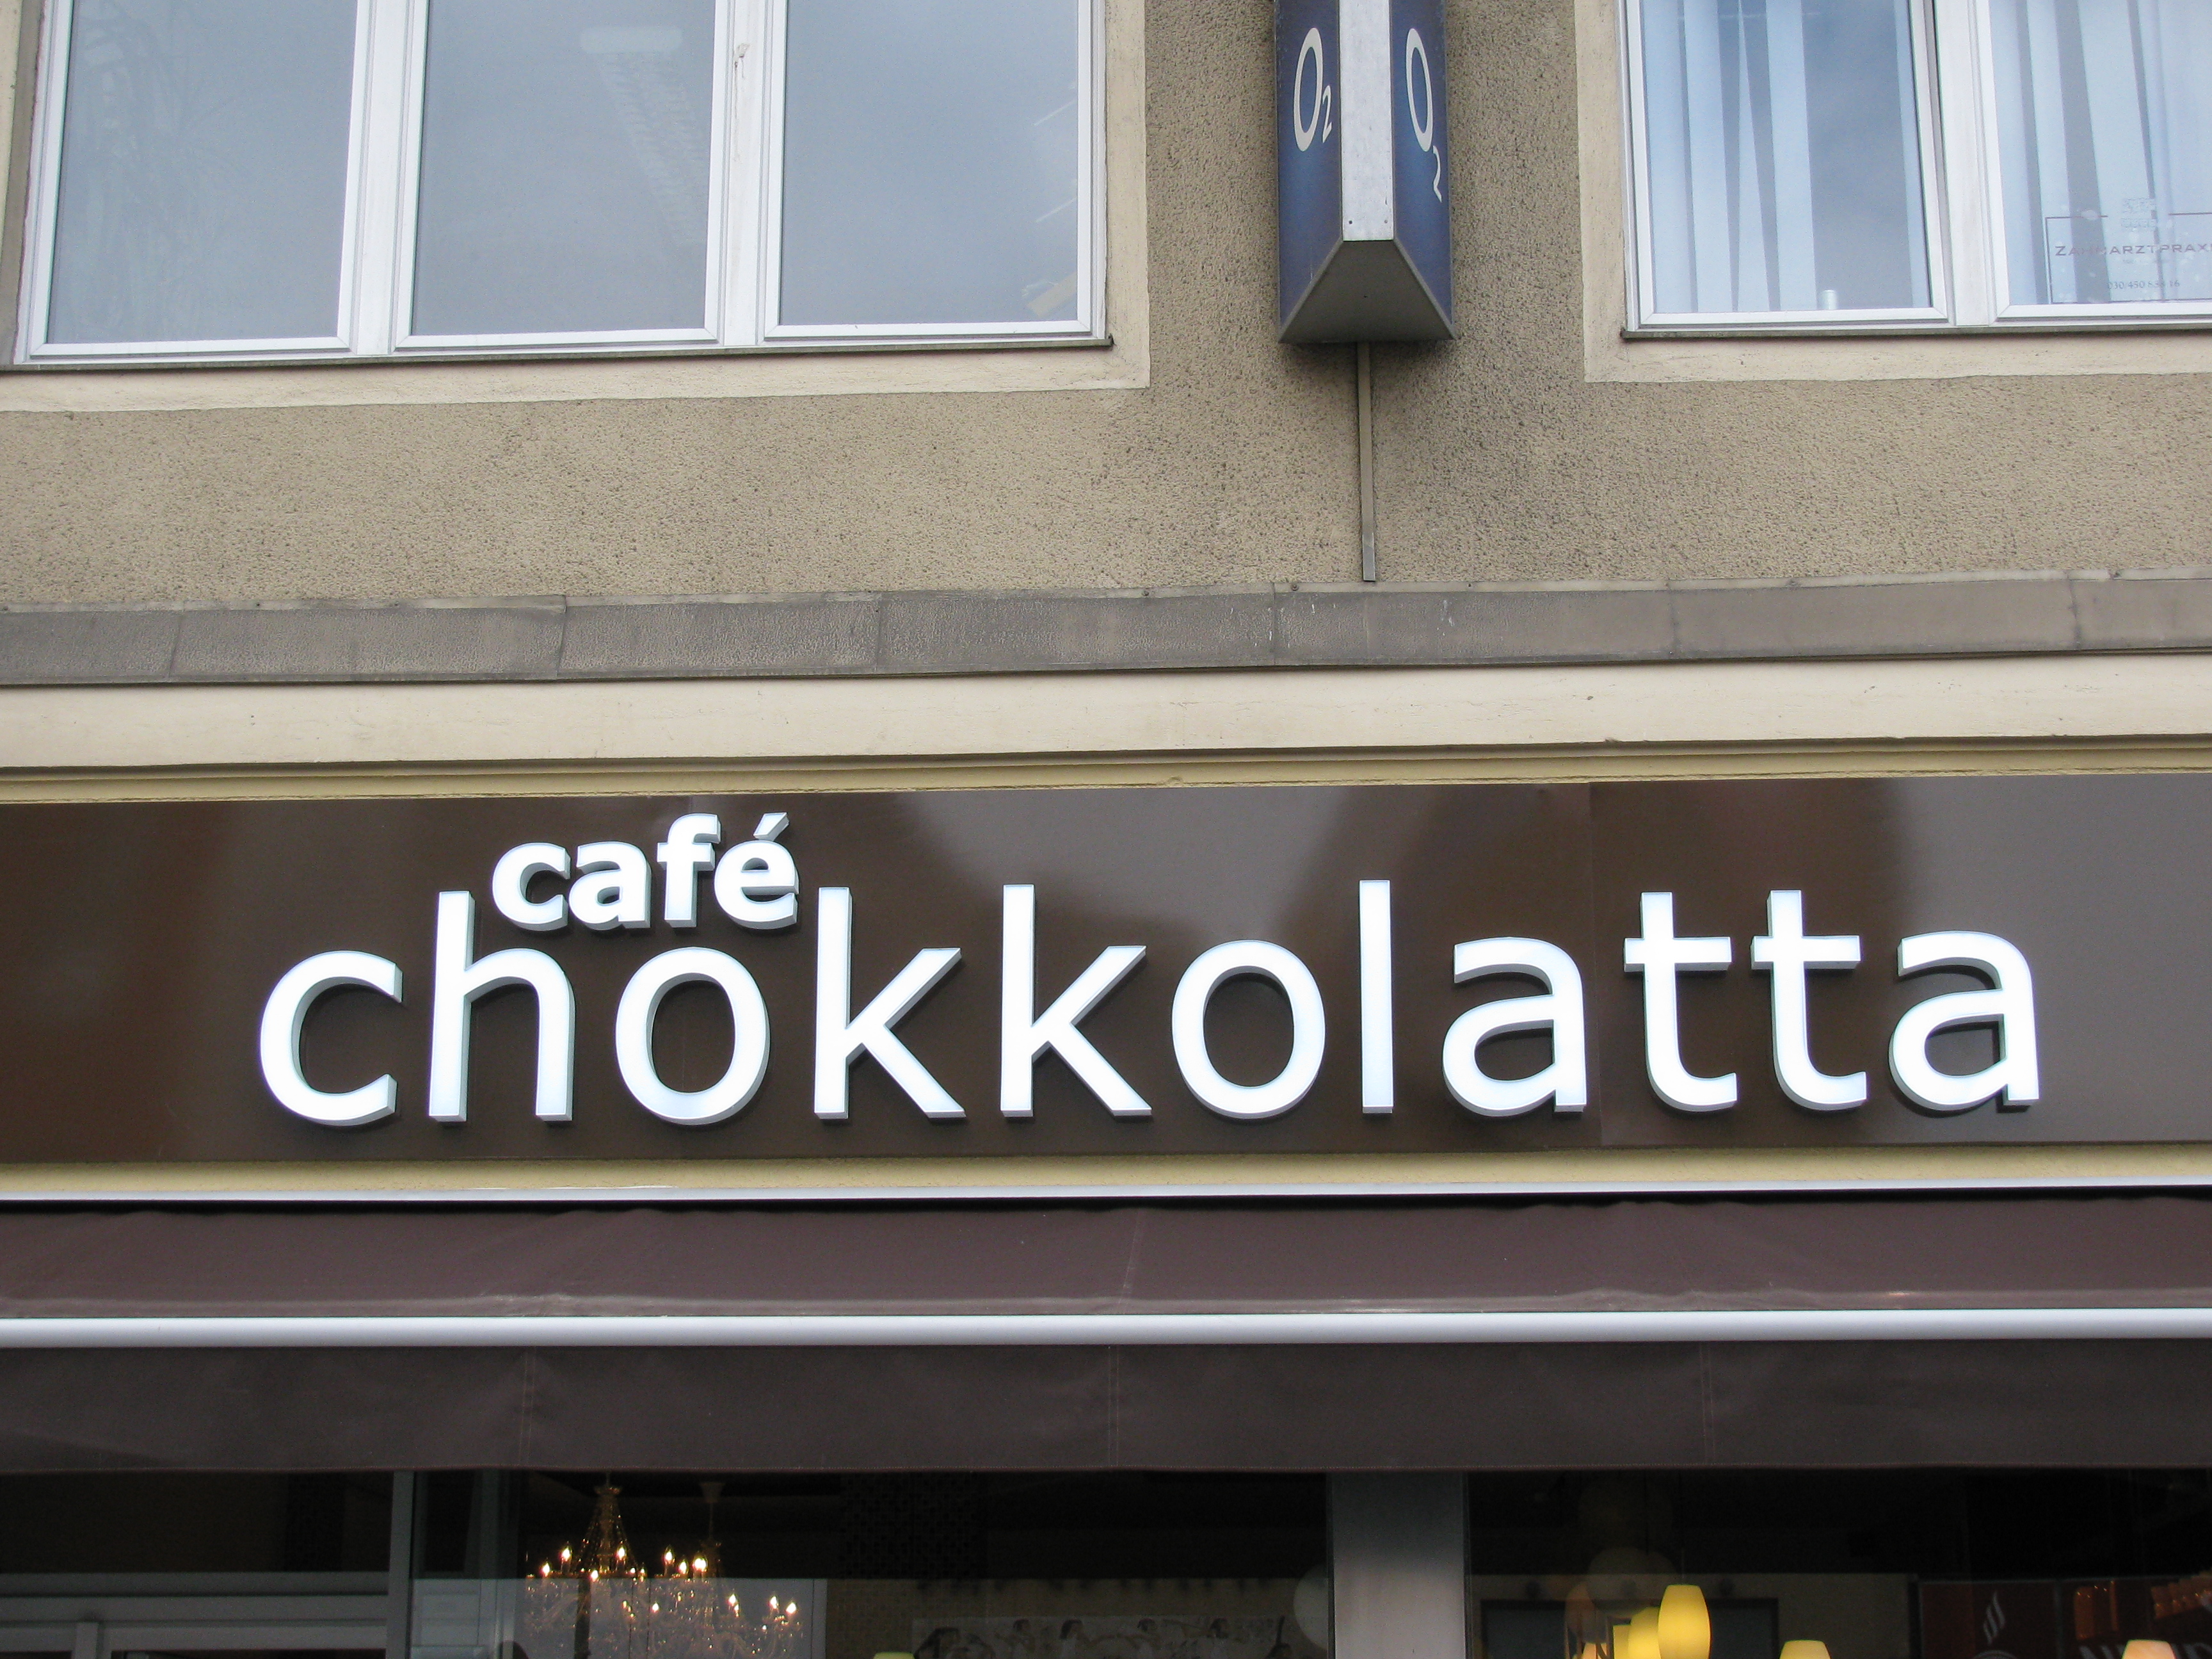 Das schöne und nagelneue Cafe Chokkolatta in Berlin-Wedding am U-Bahnhof Seestraße!!! :)